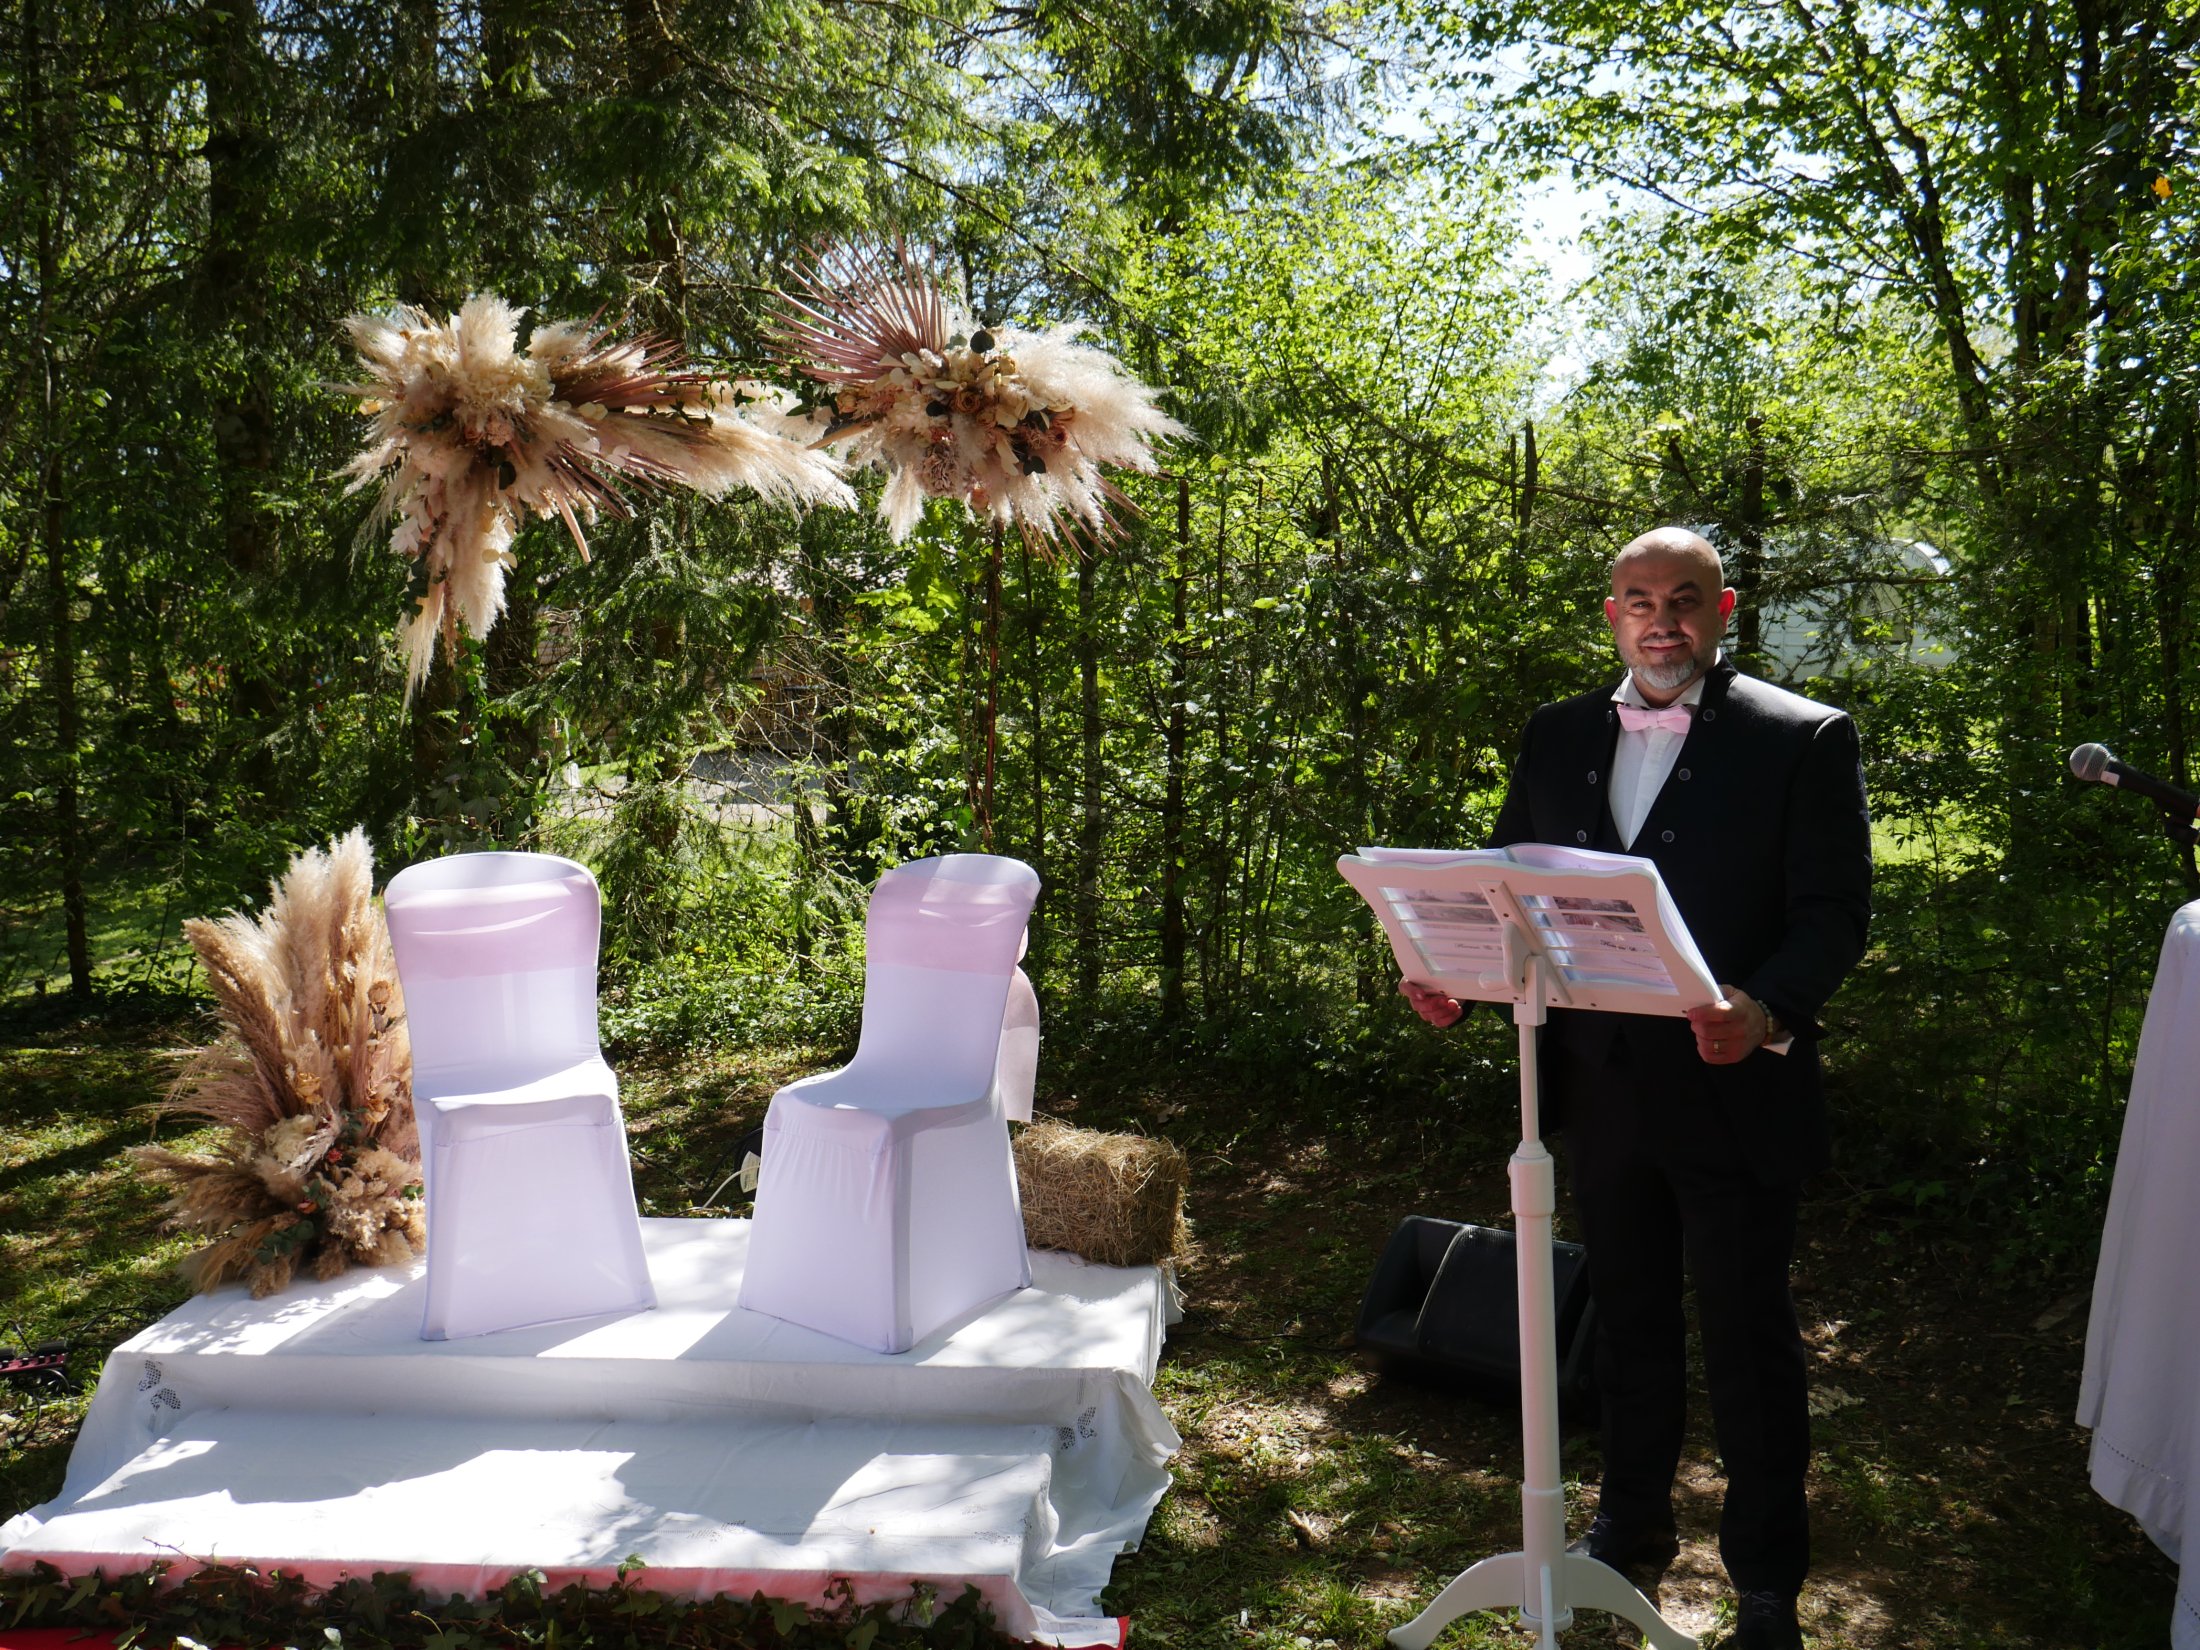 Mariage champêtre : officiant de cérémonie